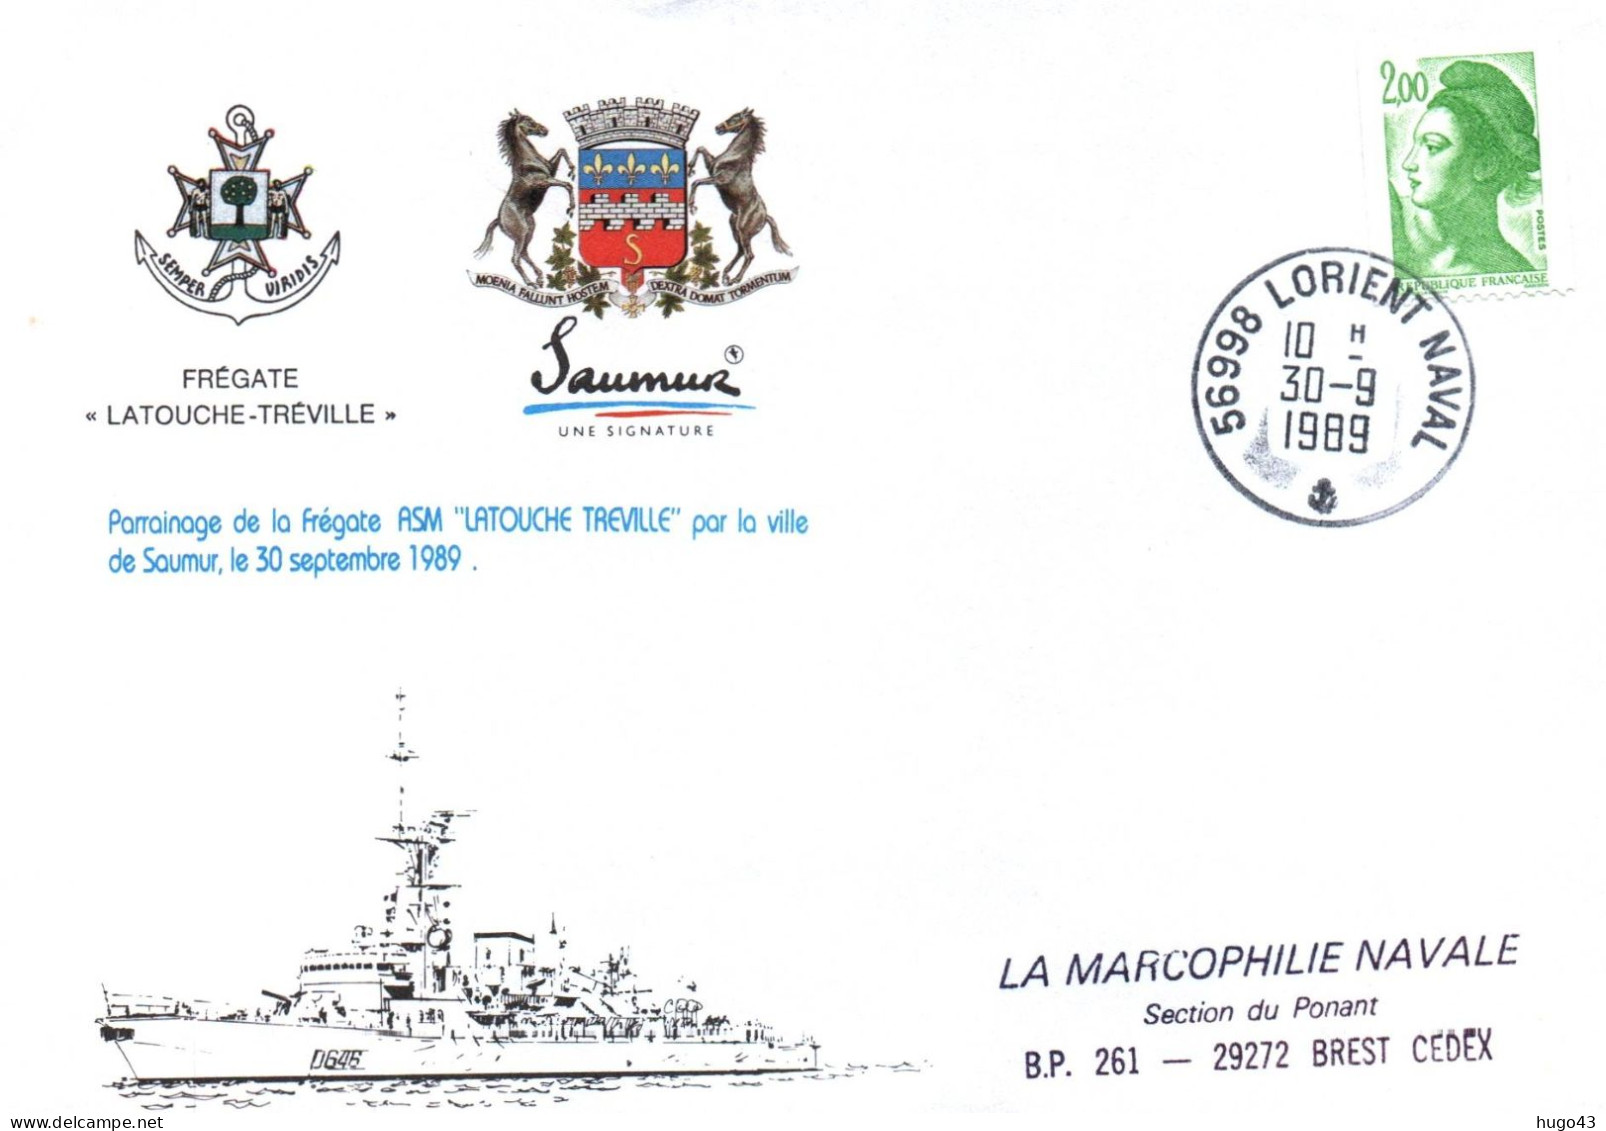 ENVELOPPE AVEC CACHET FREGATE LATOUCHE TREVILLE - PARRAINAGE VILLE DE SAUMUR LE 30/09/89 - LORIENT NAVAL LE 30/09/89 - Naval Post